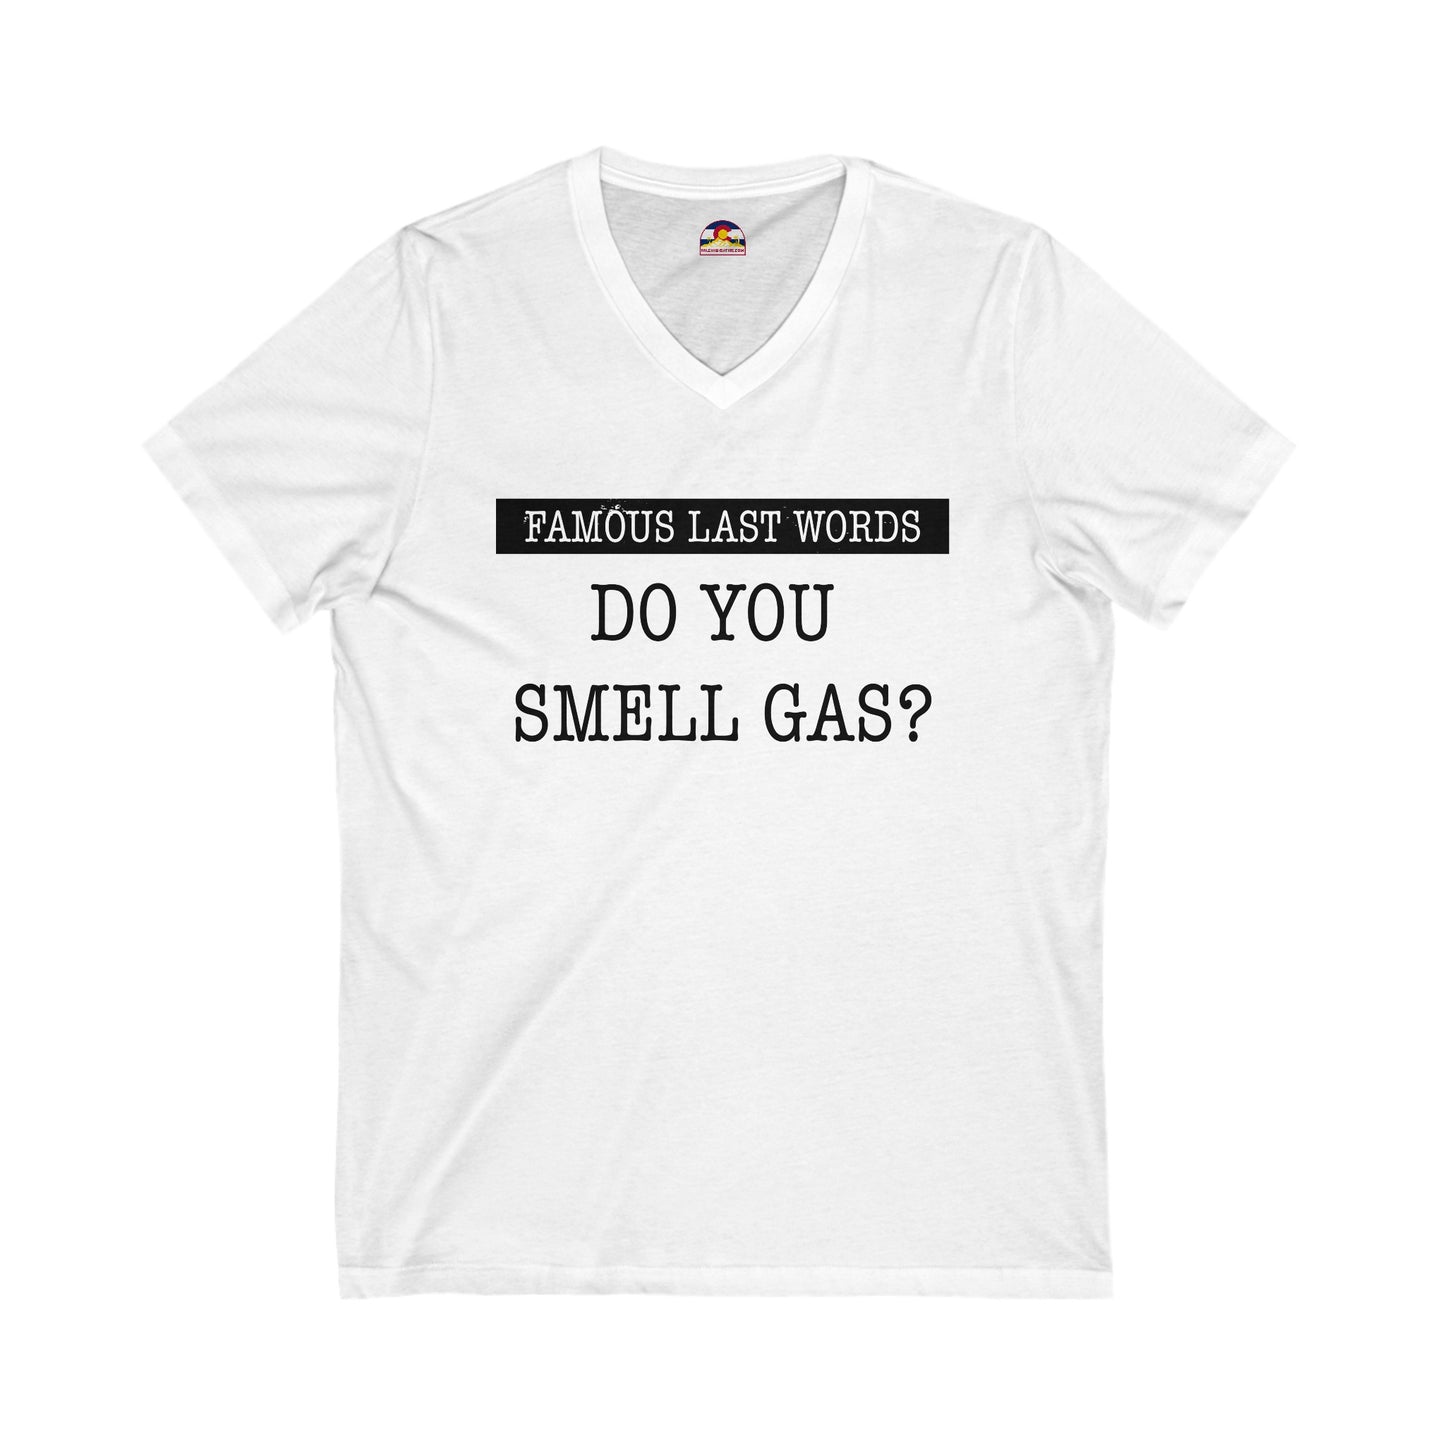 FLW "Do You Smell Gas?" T-Shirt  V-Neck